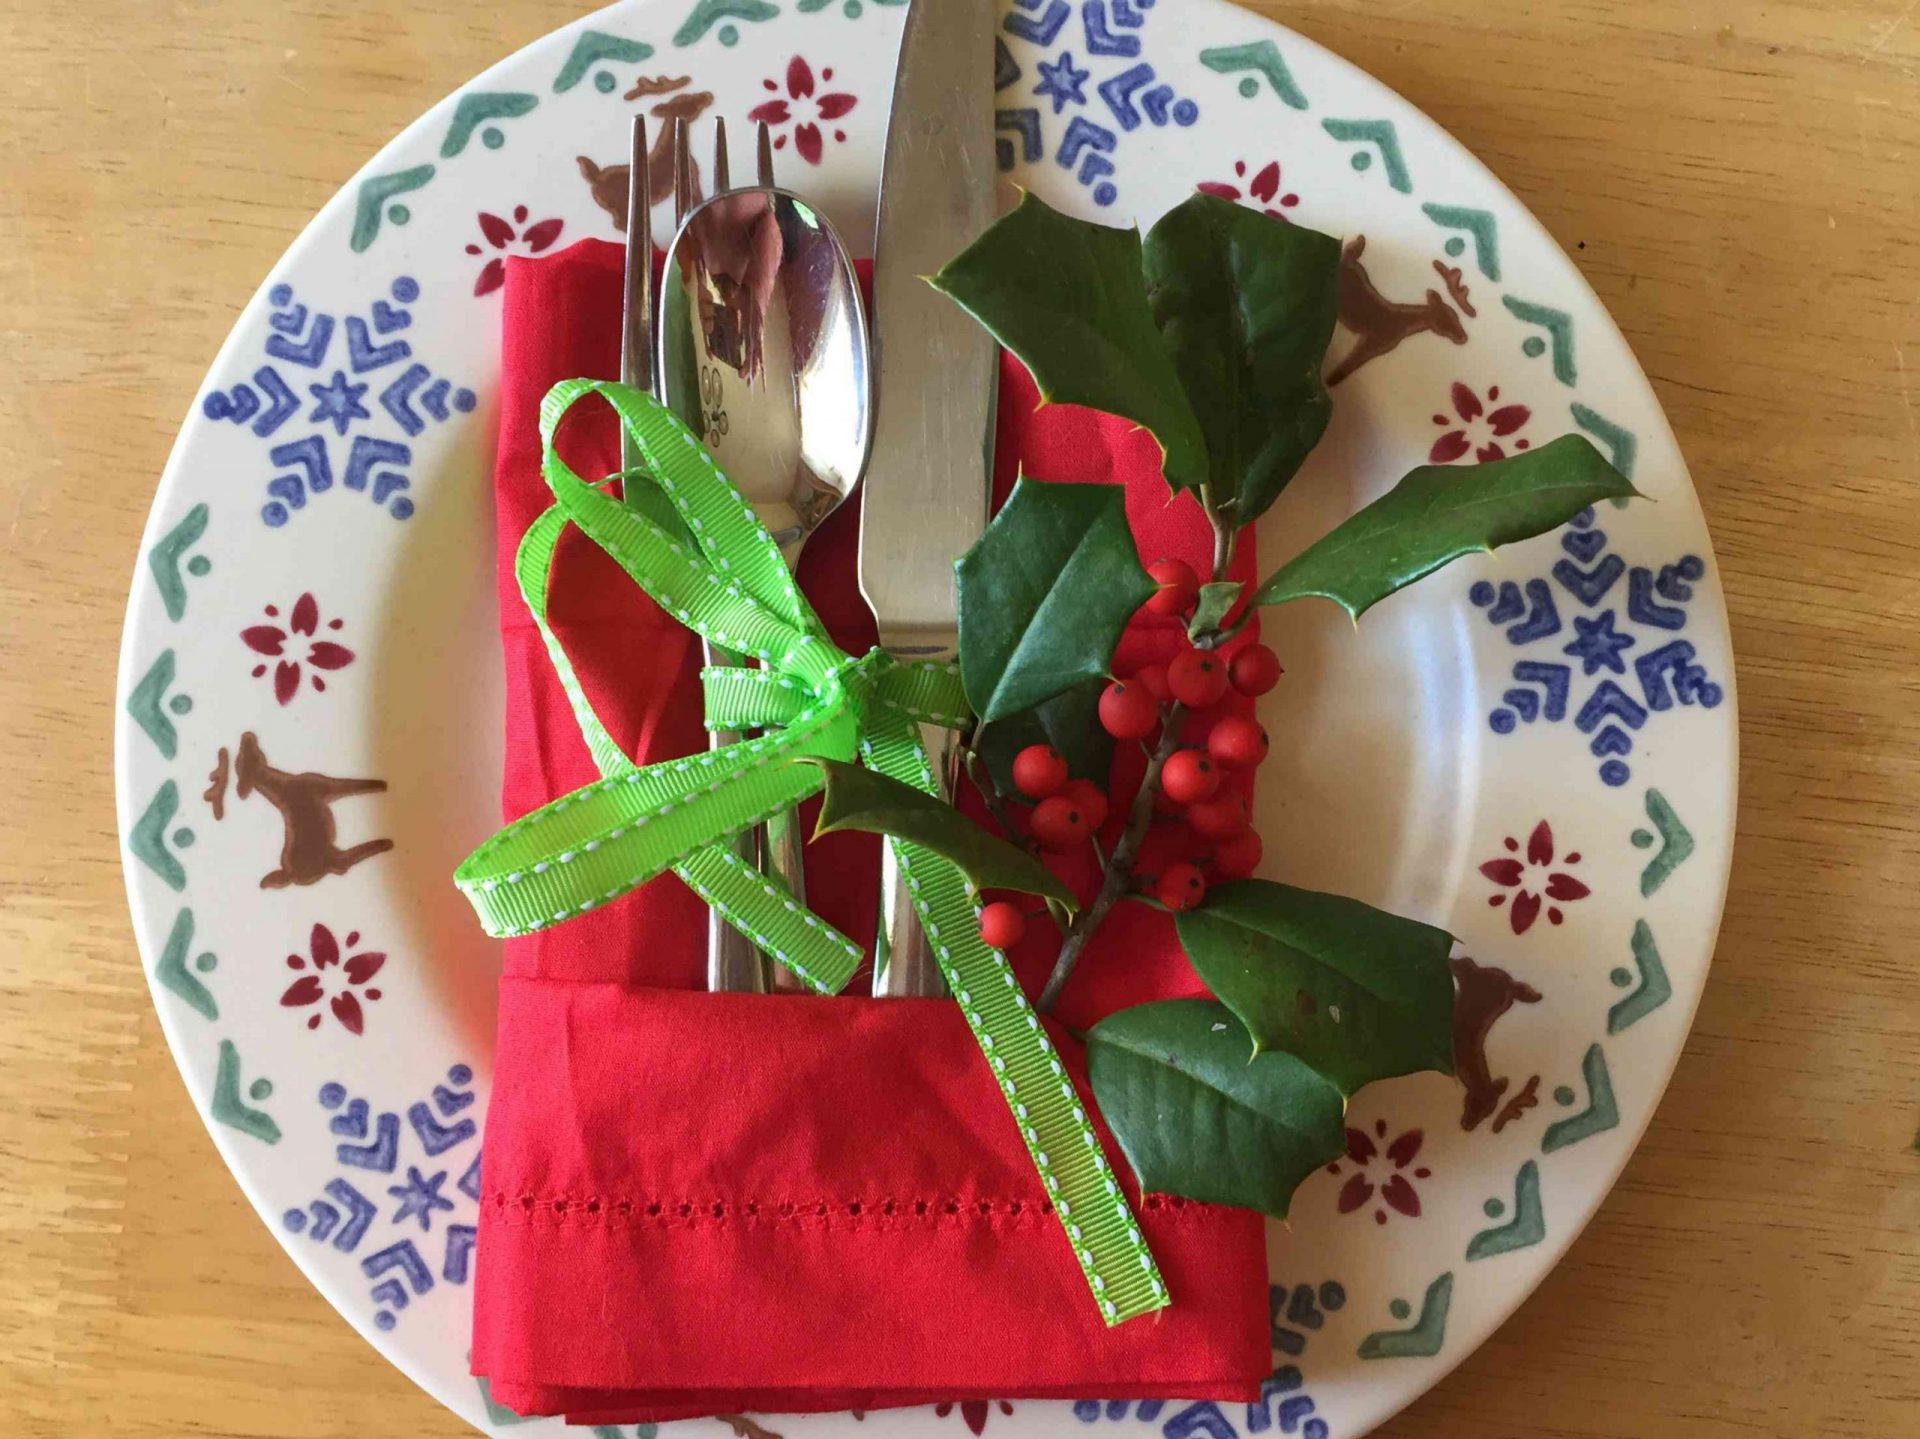 servilleta de tela roja doblada en forma de regalo para sujetar los cubiertos en el plato